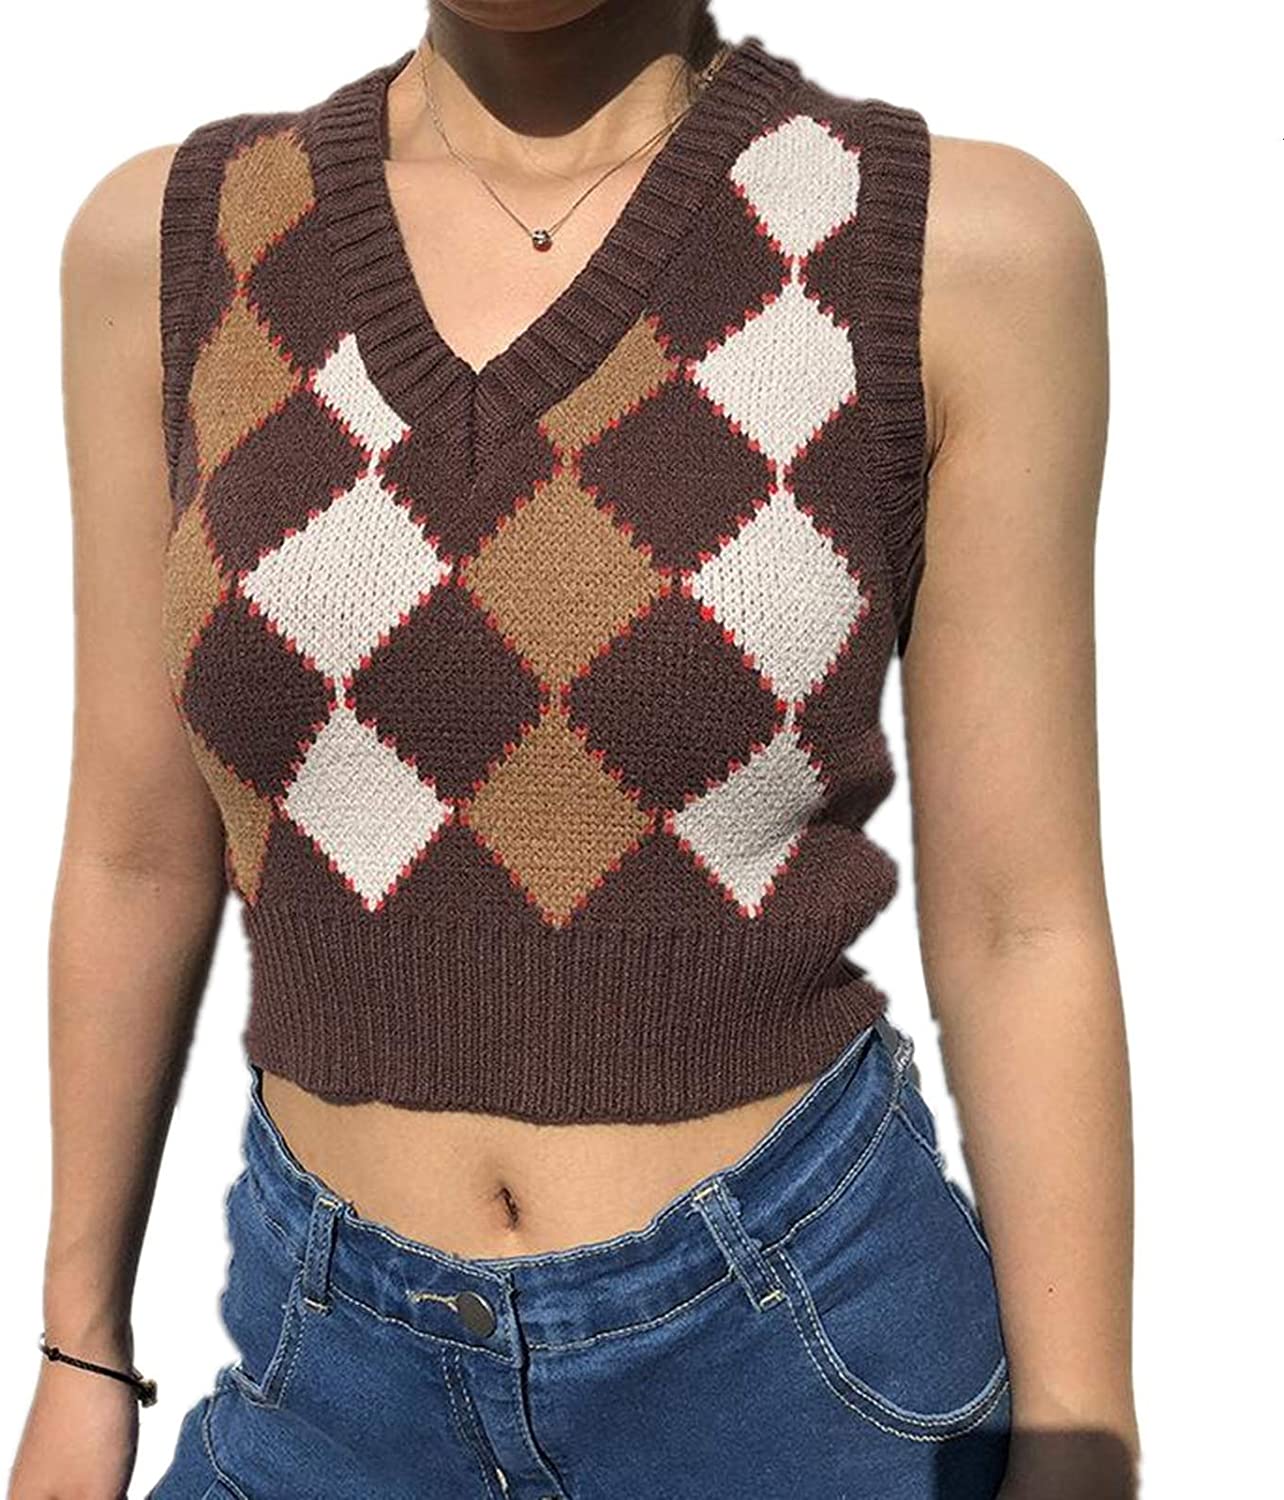 Adult Argyle Sweater Vest - 90s